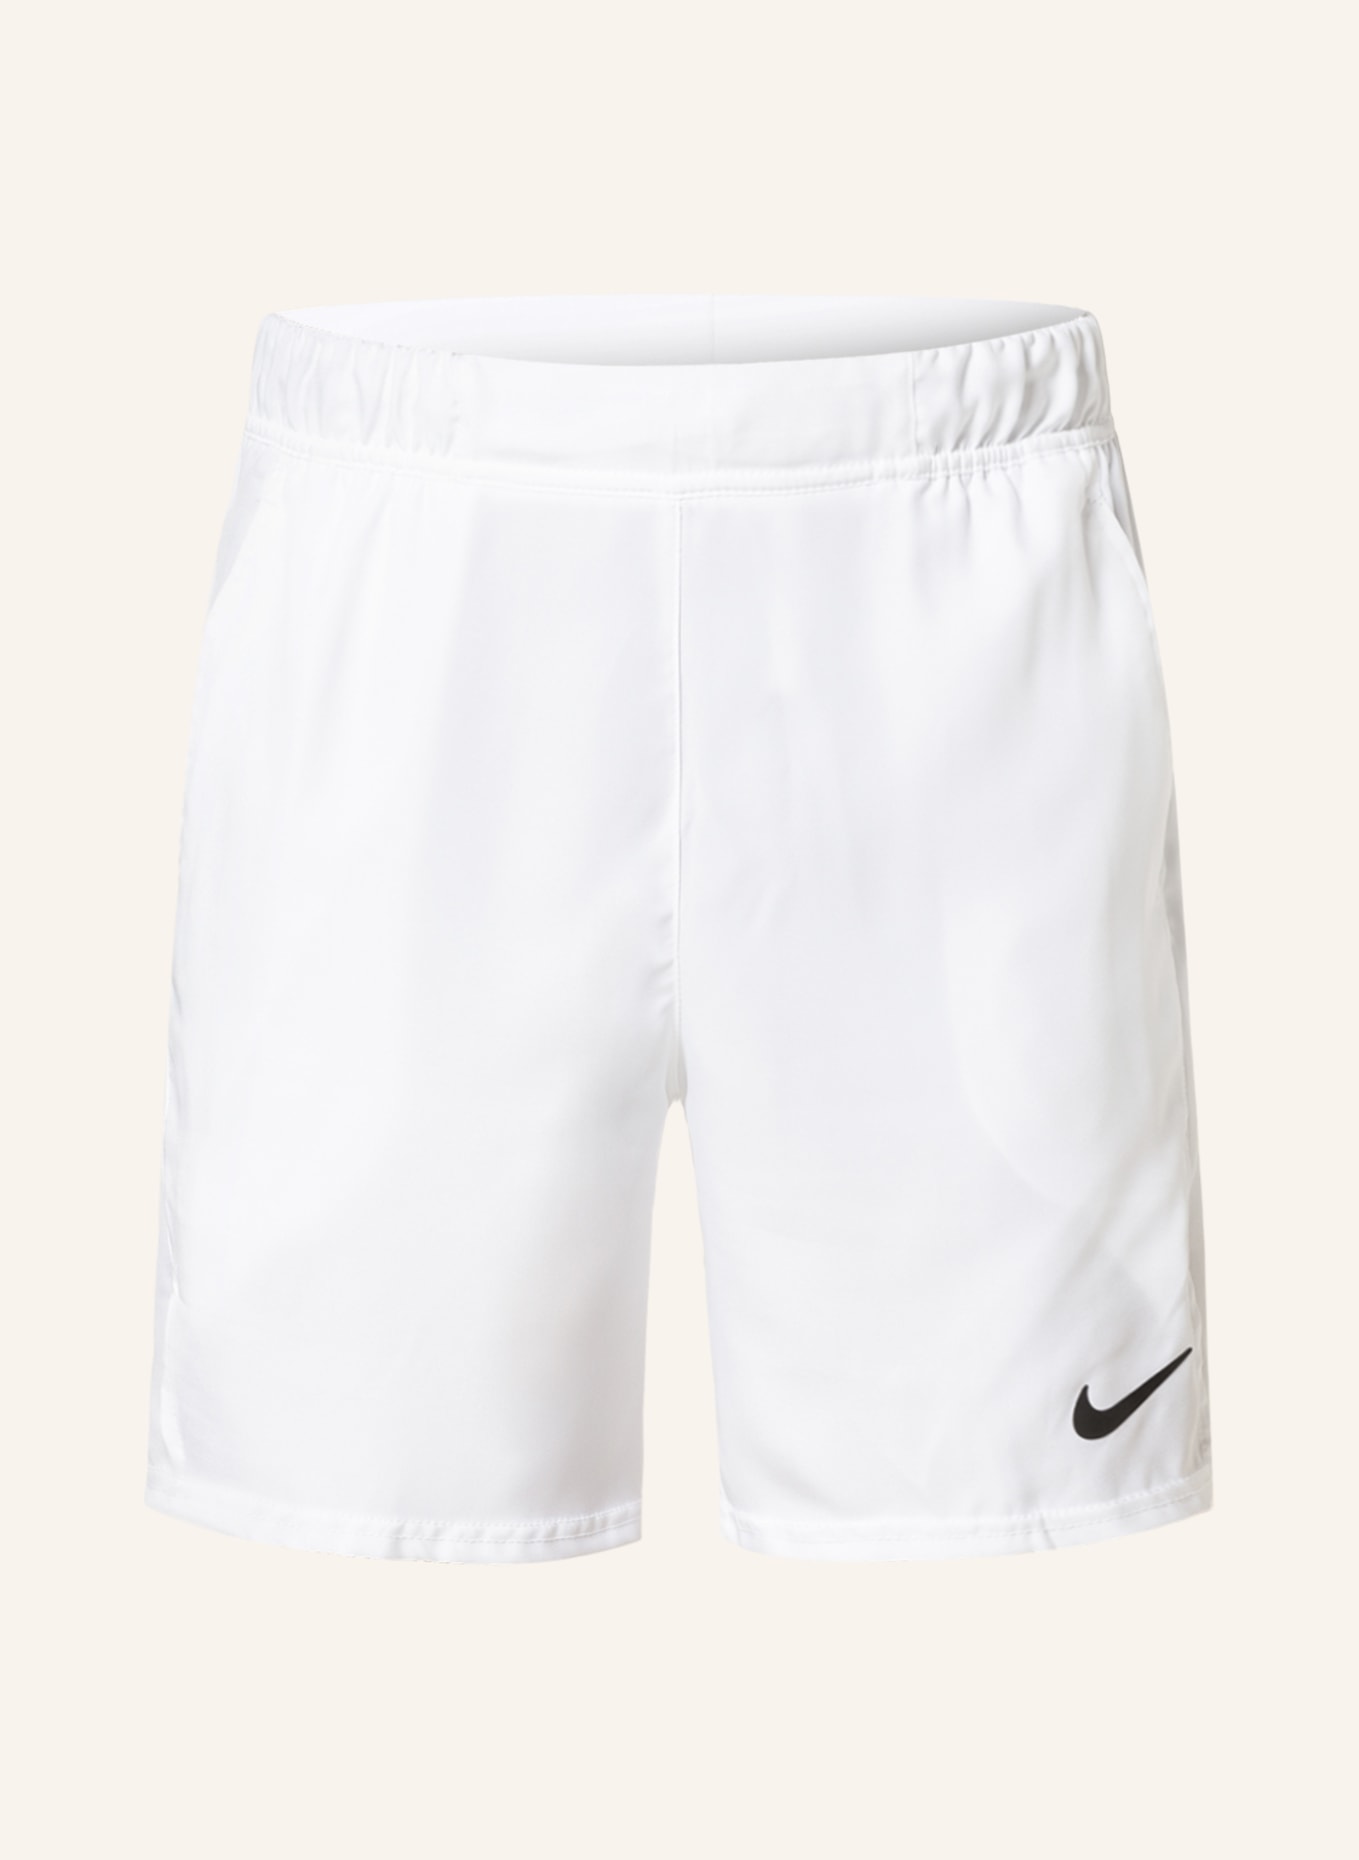 Nike Tennisshorts NIKECOURT DRI-FIT VICTORY, Farbe: WEISS (Bild 1)